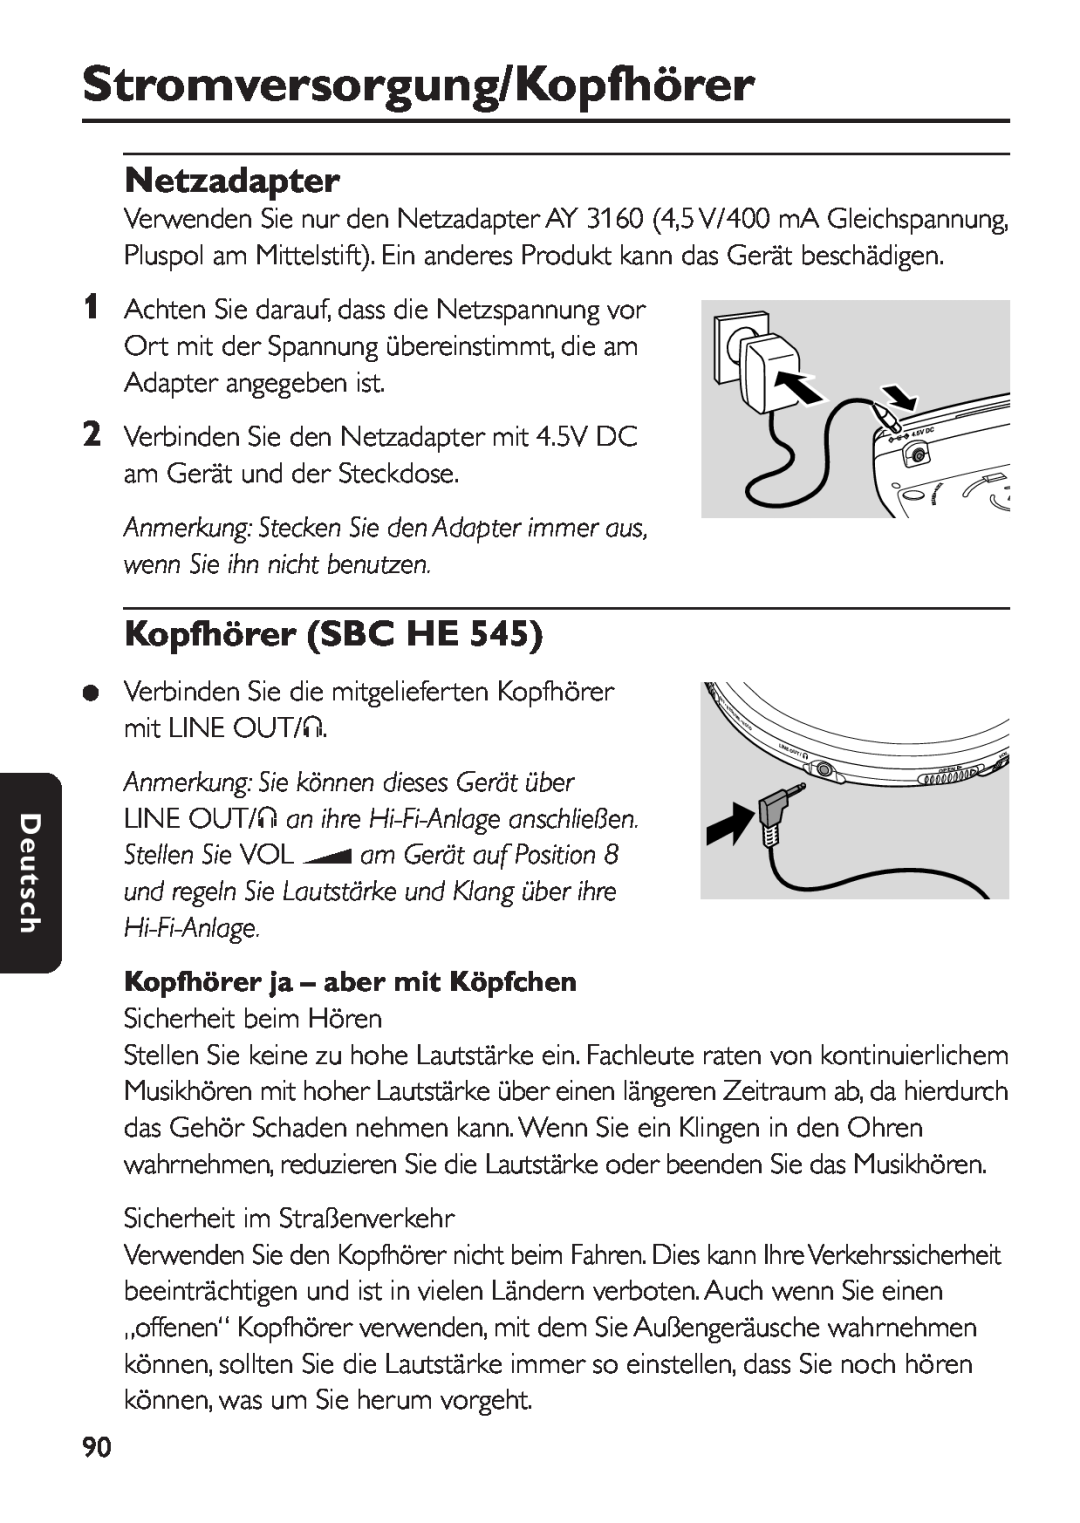 Philips EXP 501/00 Stromversorgung/Kopfhörer, Netzadapter, Kopfhörer SBC HE, Kopfhörer ja - aber mit Köpfchen, Deutsch 